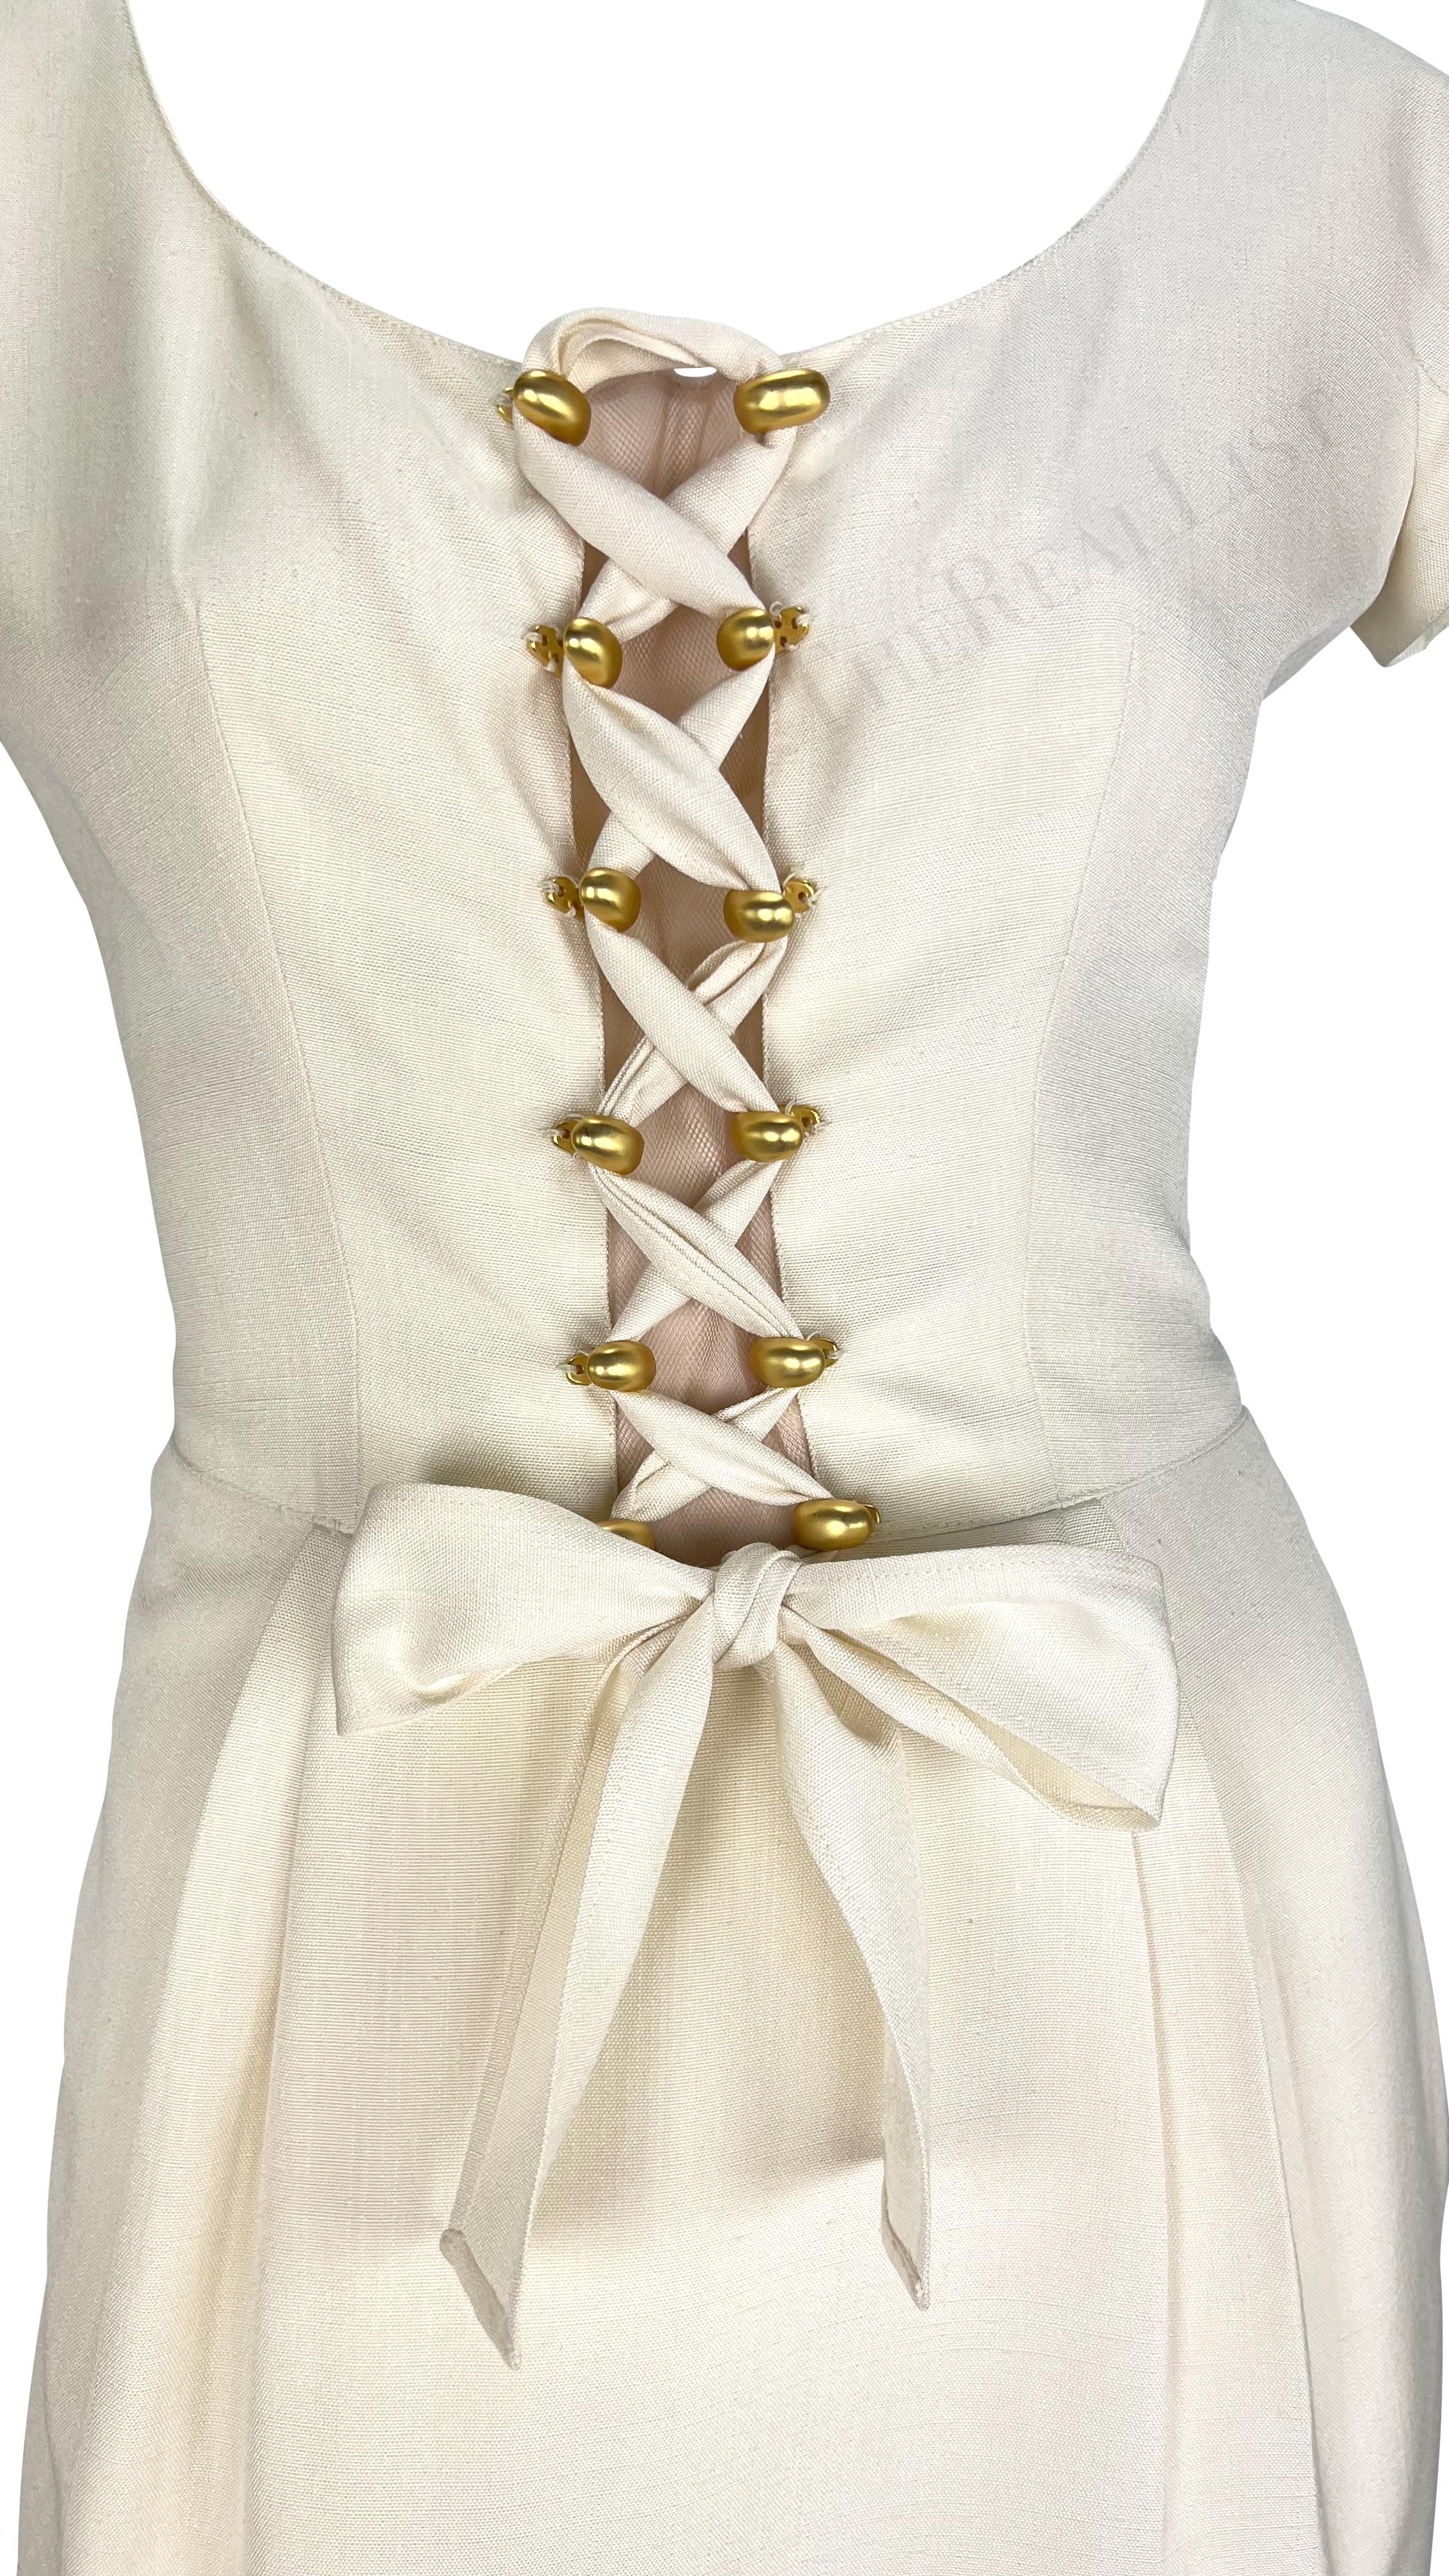 Voici une fabuleuse mini robe Valentino en lin crème. Issue de la collection printemps/été 1995, cette robe présente des manches pétales, un empiècement en maille au centre et un détail de laçage sur le devant. Subtilement sexy et chic, cette robe